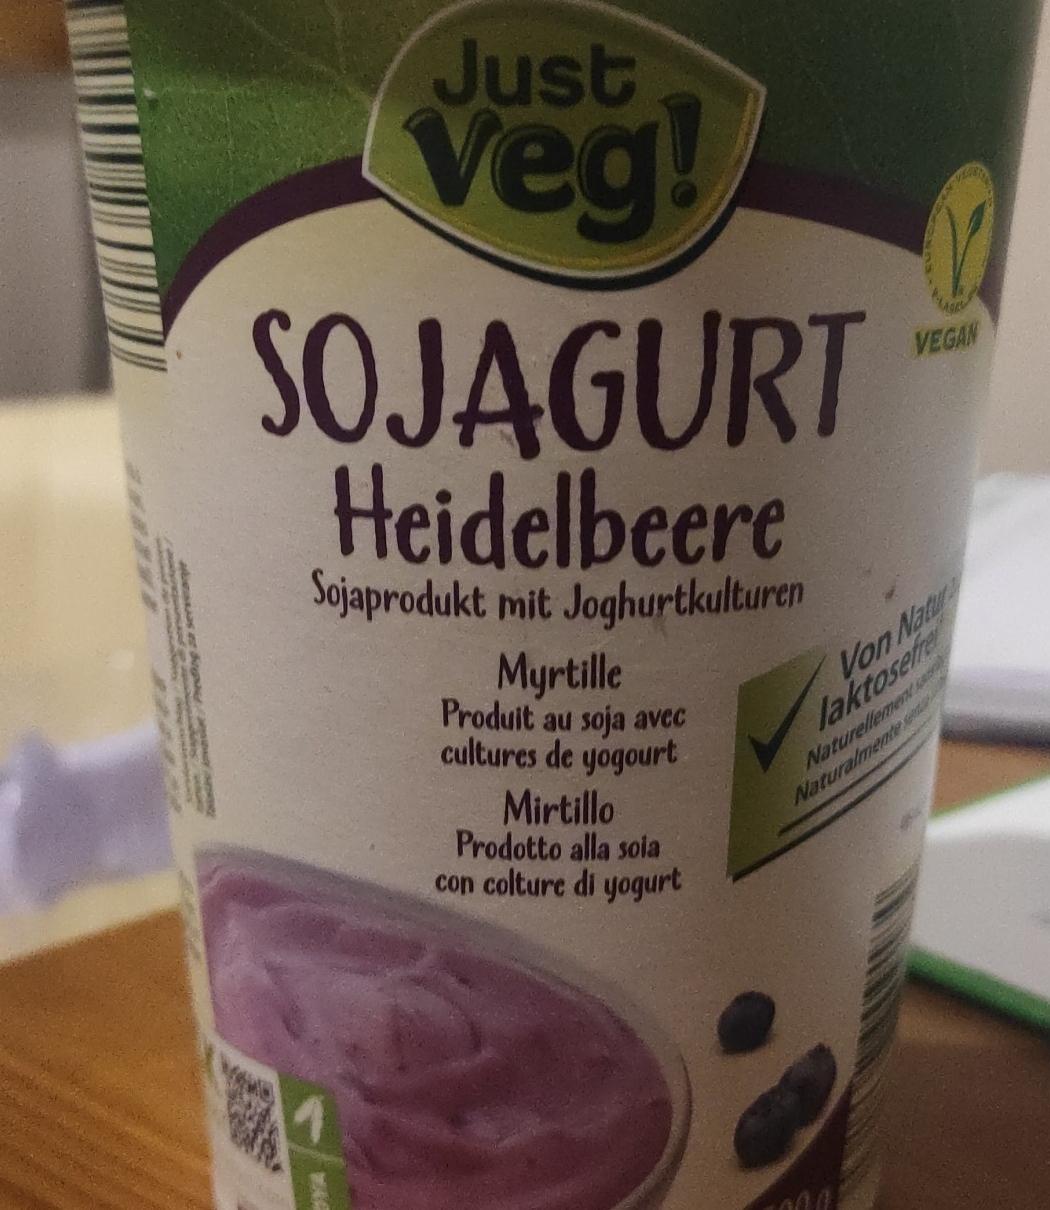 Фото - Йогурт соевый ферментированный с черникой Sojagurt Just Veg!